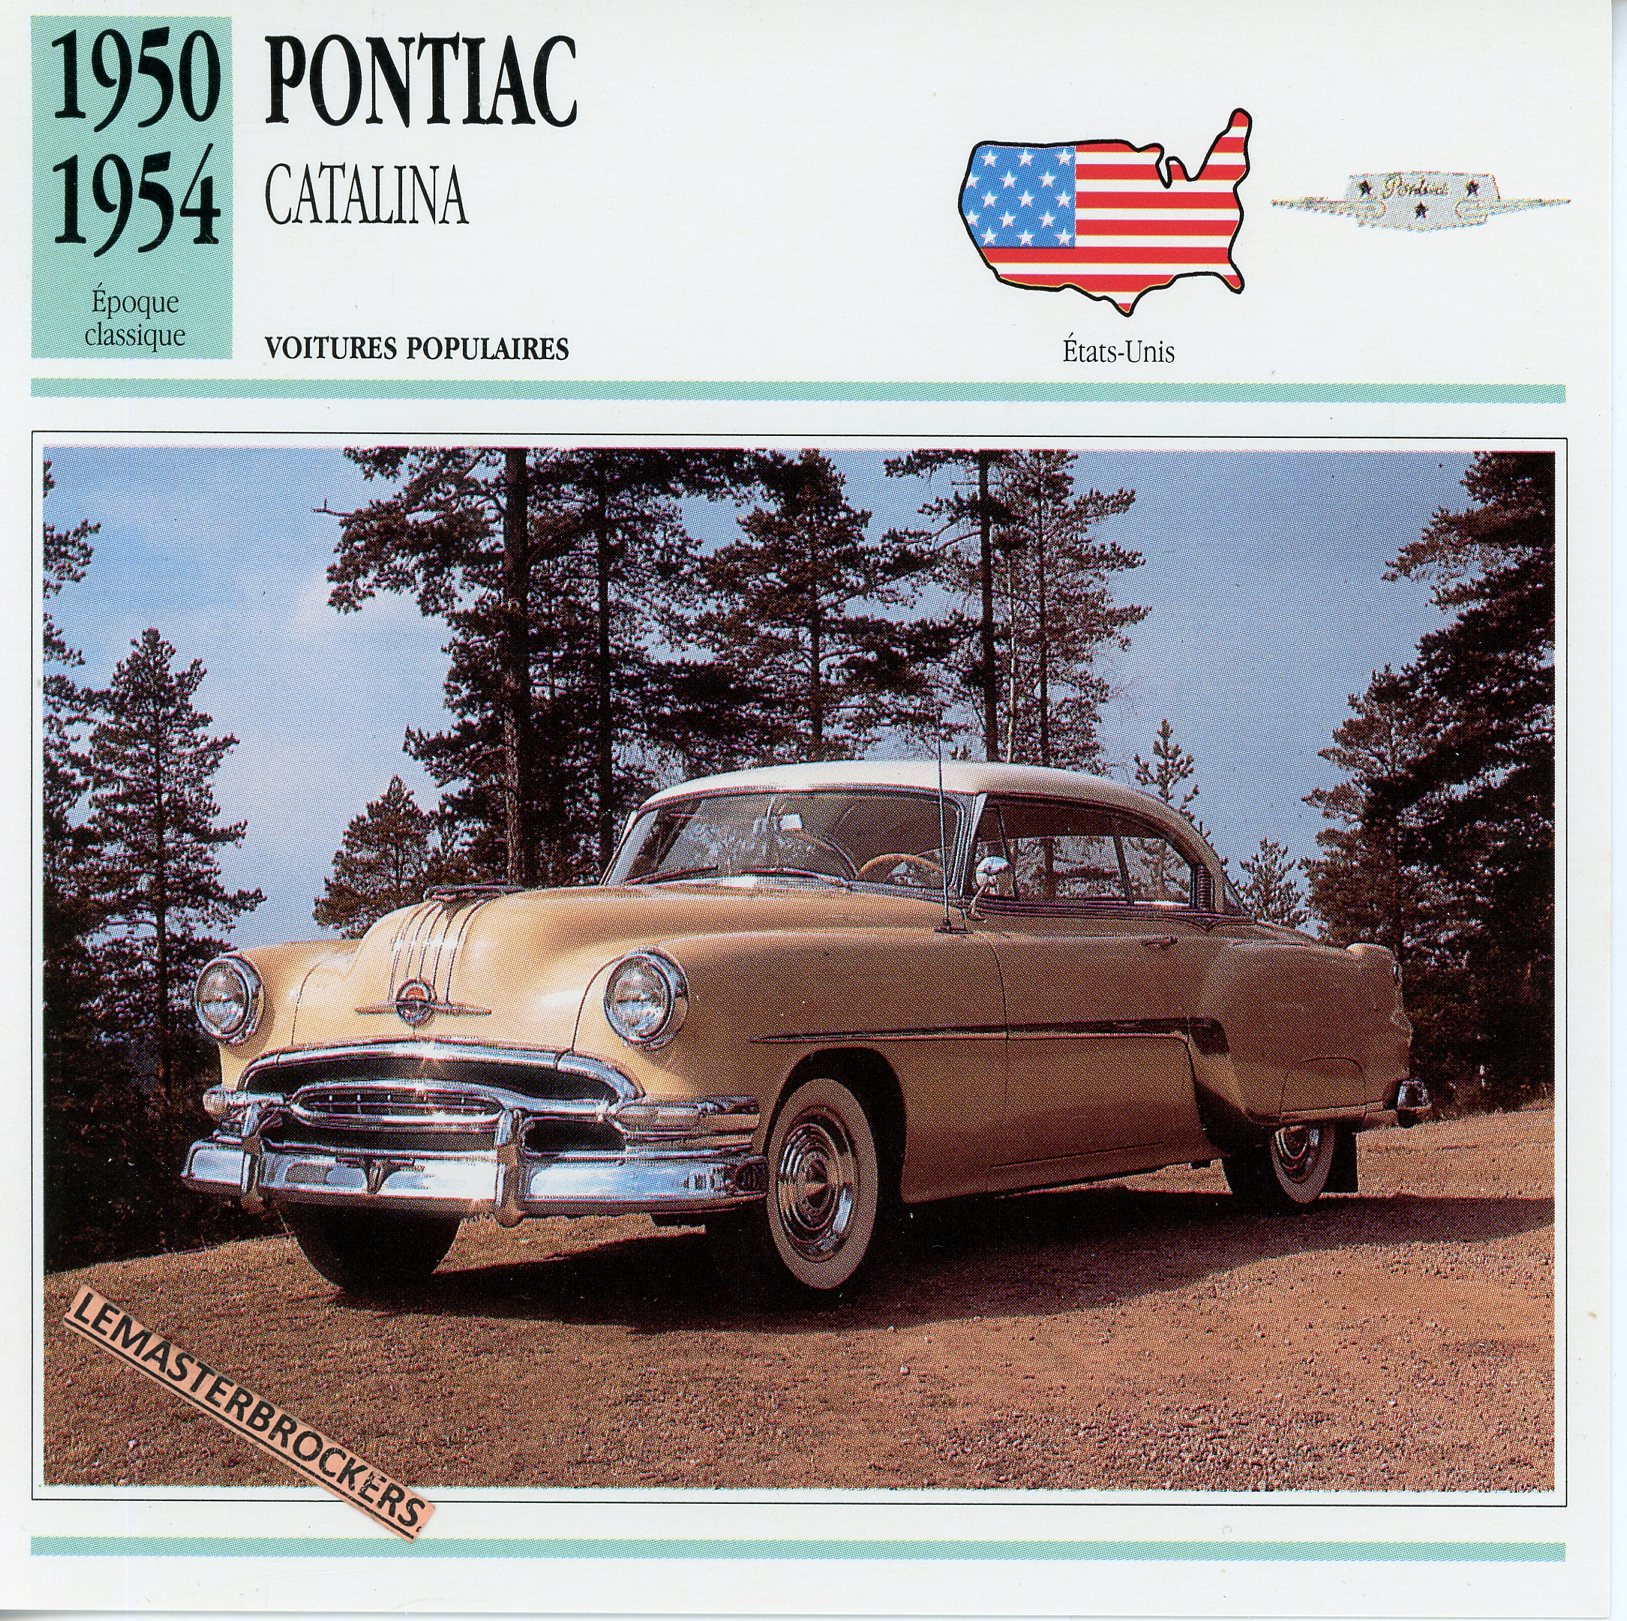 PONTIAC-CATALINA-1950-1954-FICHE-AUTO-ATLAS-LEMASTERBROCKERS